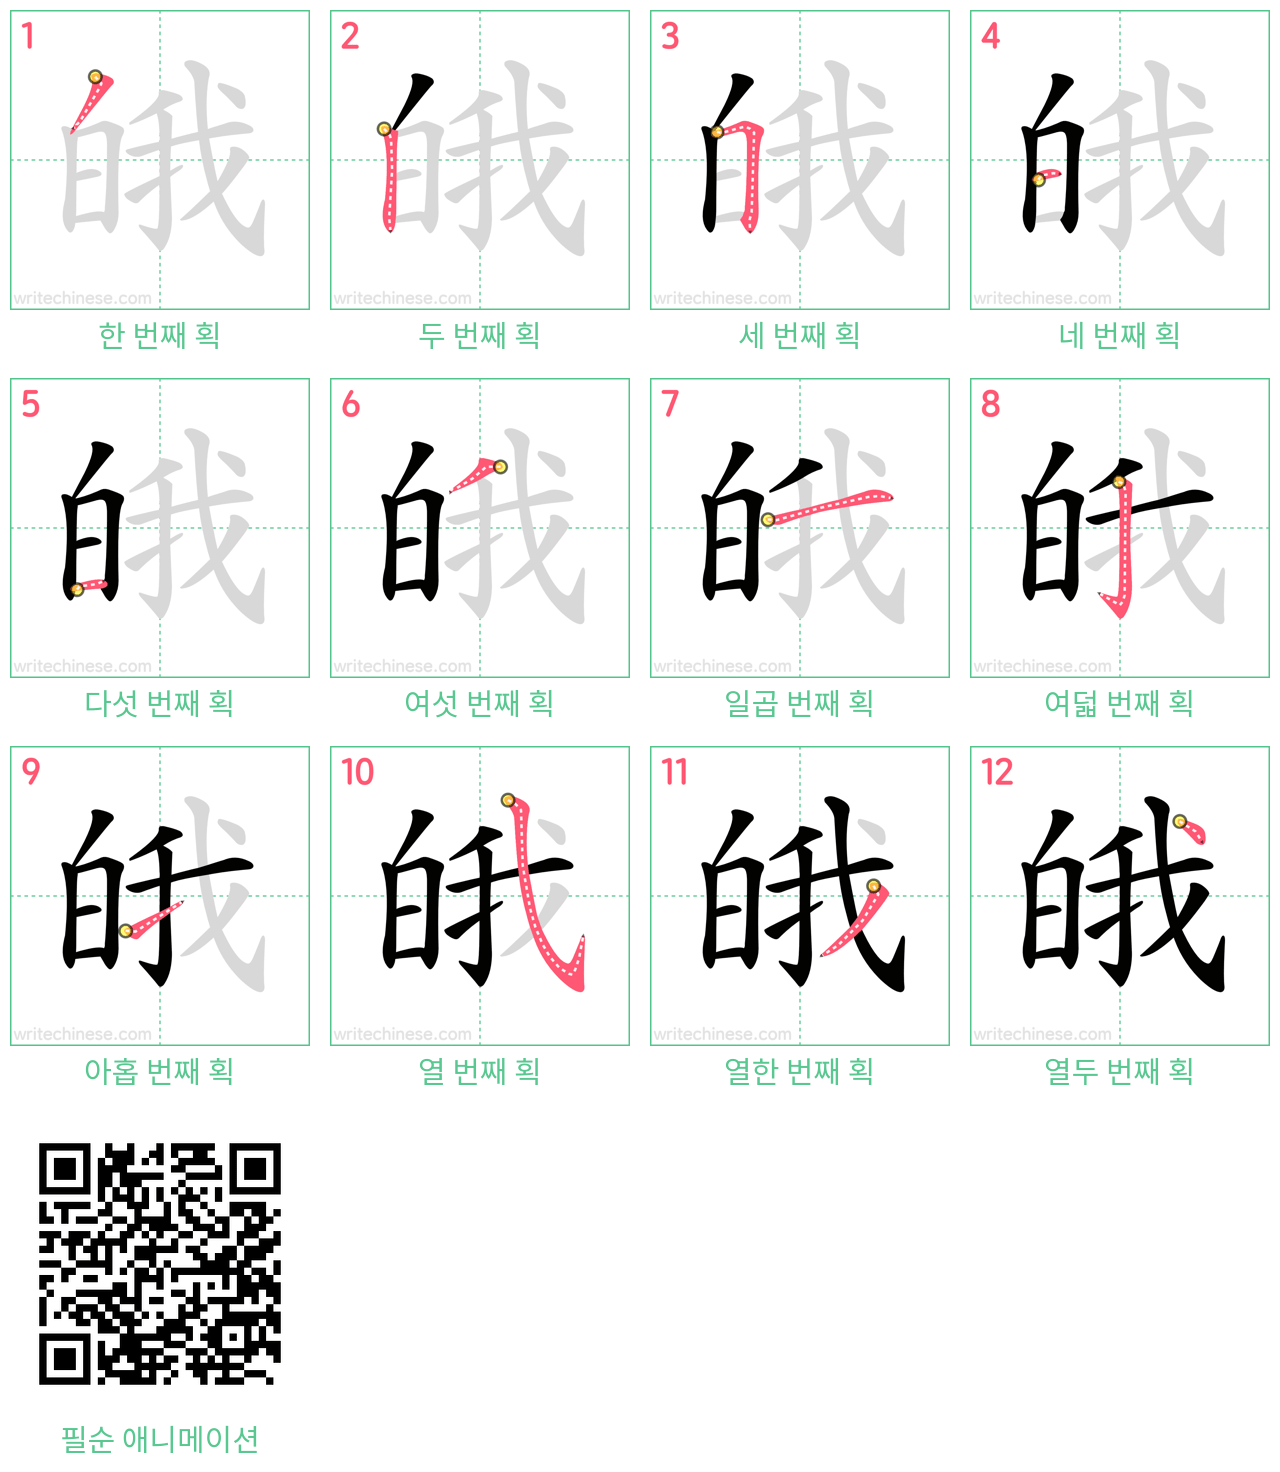 皒 step-by-step stroke order diagrams